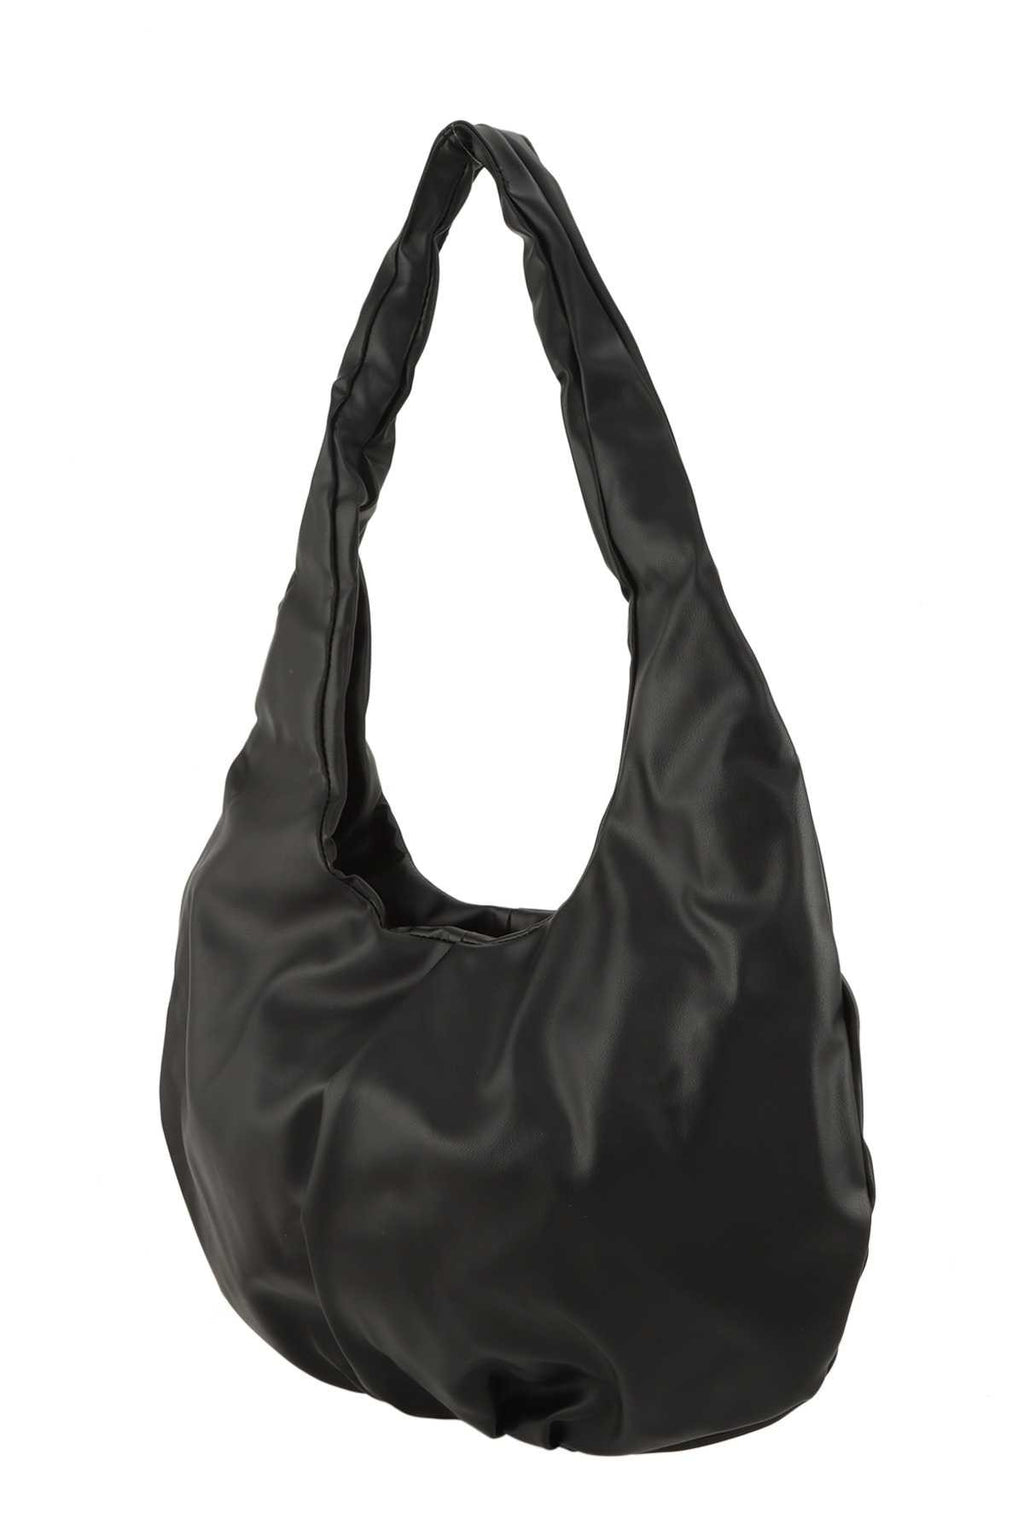 Black Dumpling Shape Shoulder Hobo Bag